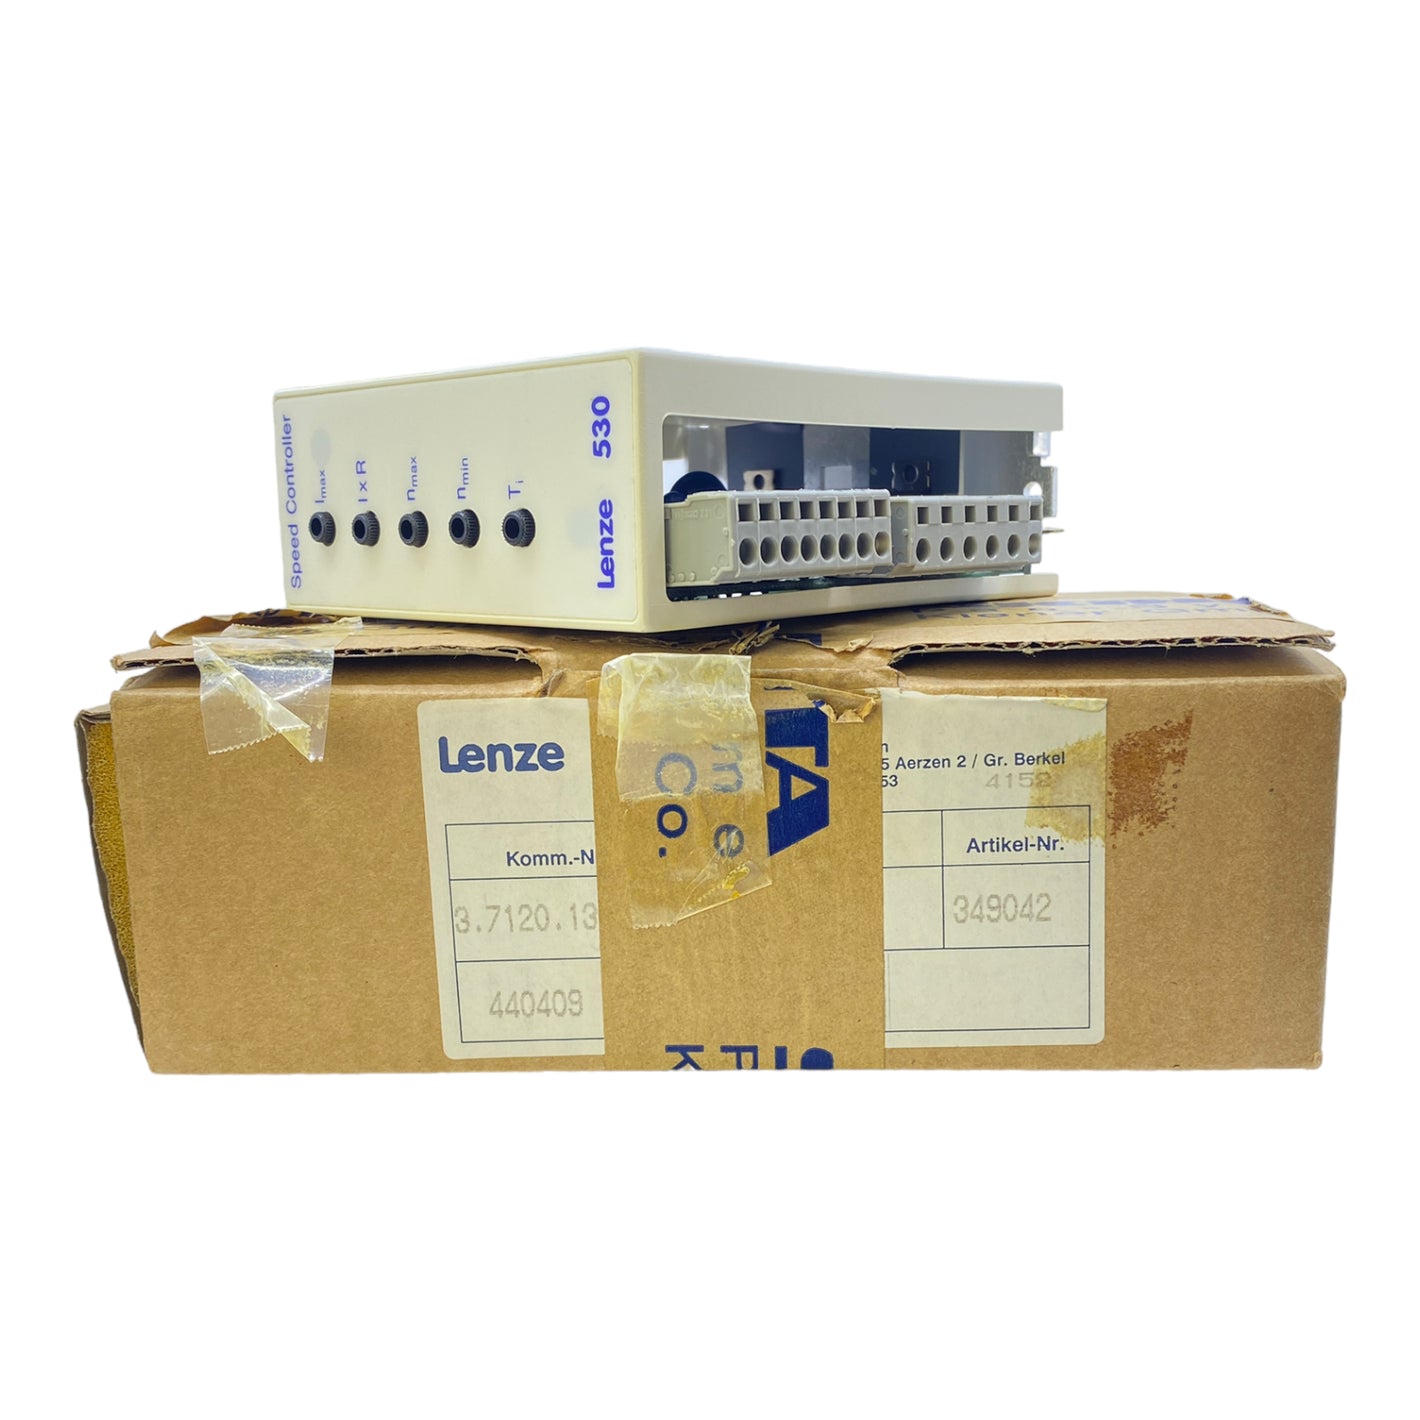 Lenze 33.532--E power converter 00349042 230Lenze 33.532--E power converter 00349042, 230V 50/60Hz, G 180V 2A, G 210V 0.3AV 50/60Hz, G 180V 2A